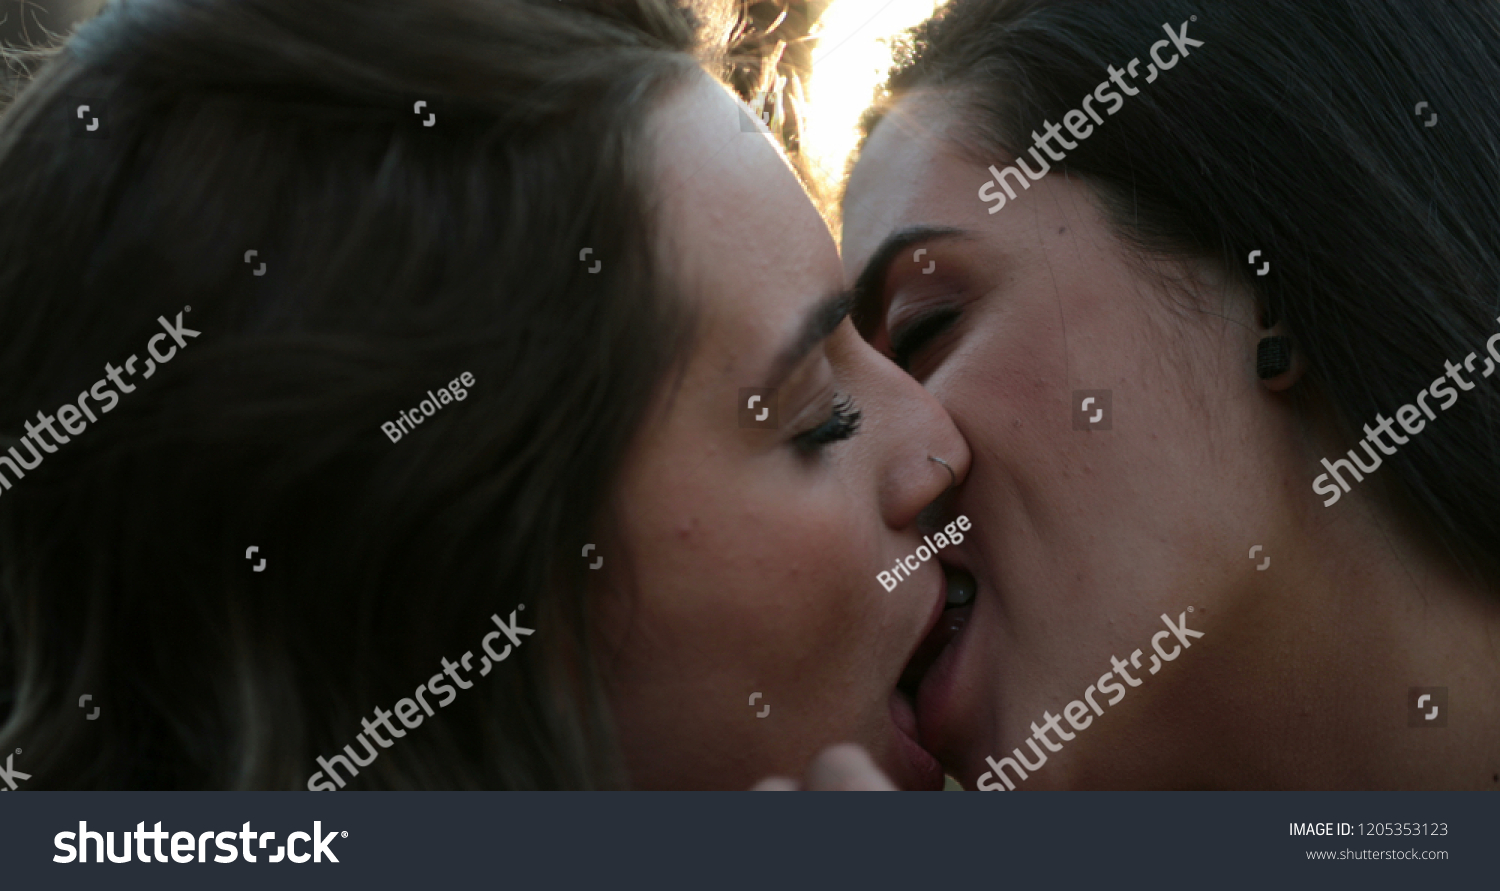 Real Lesbian Pics